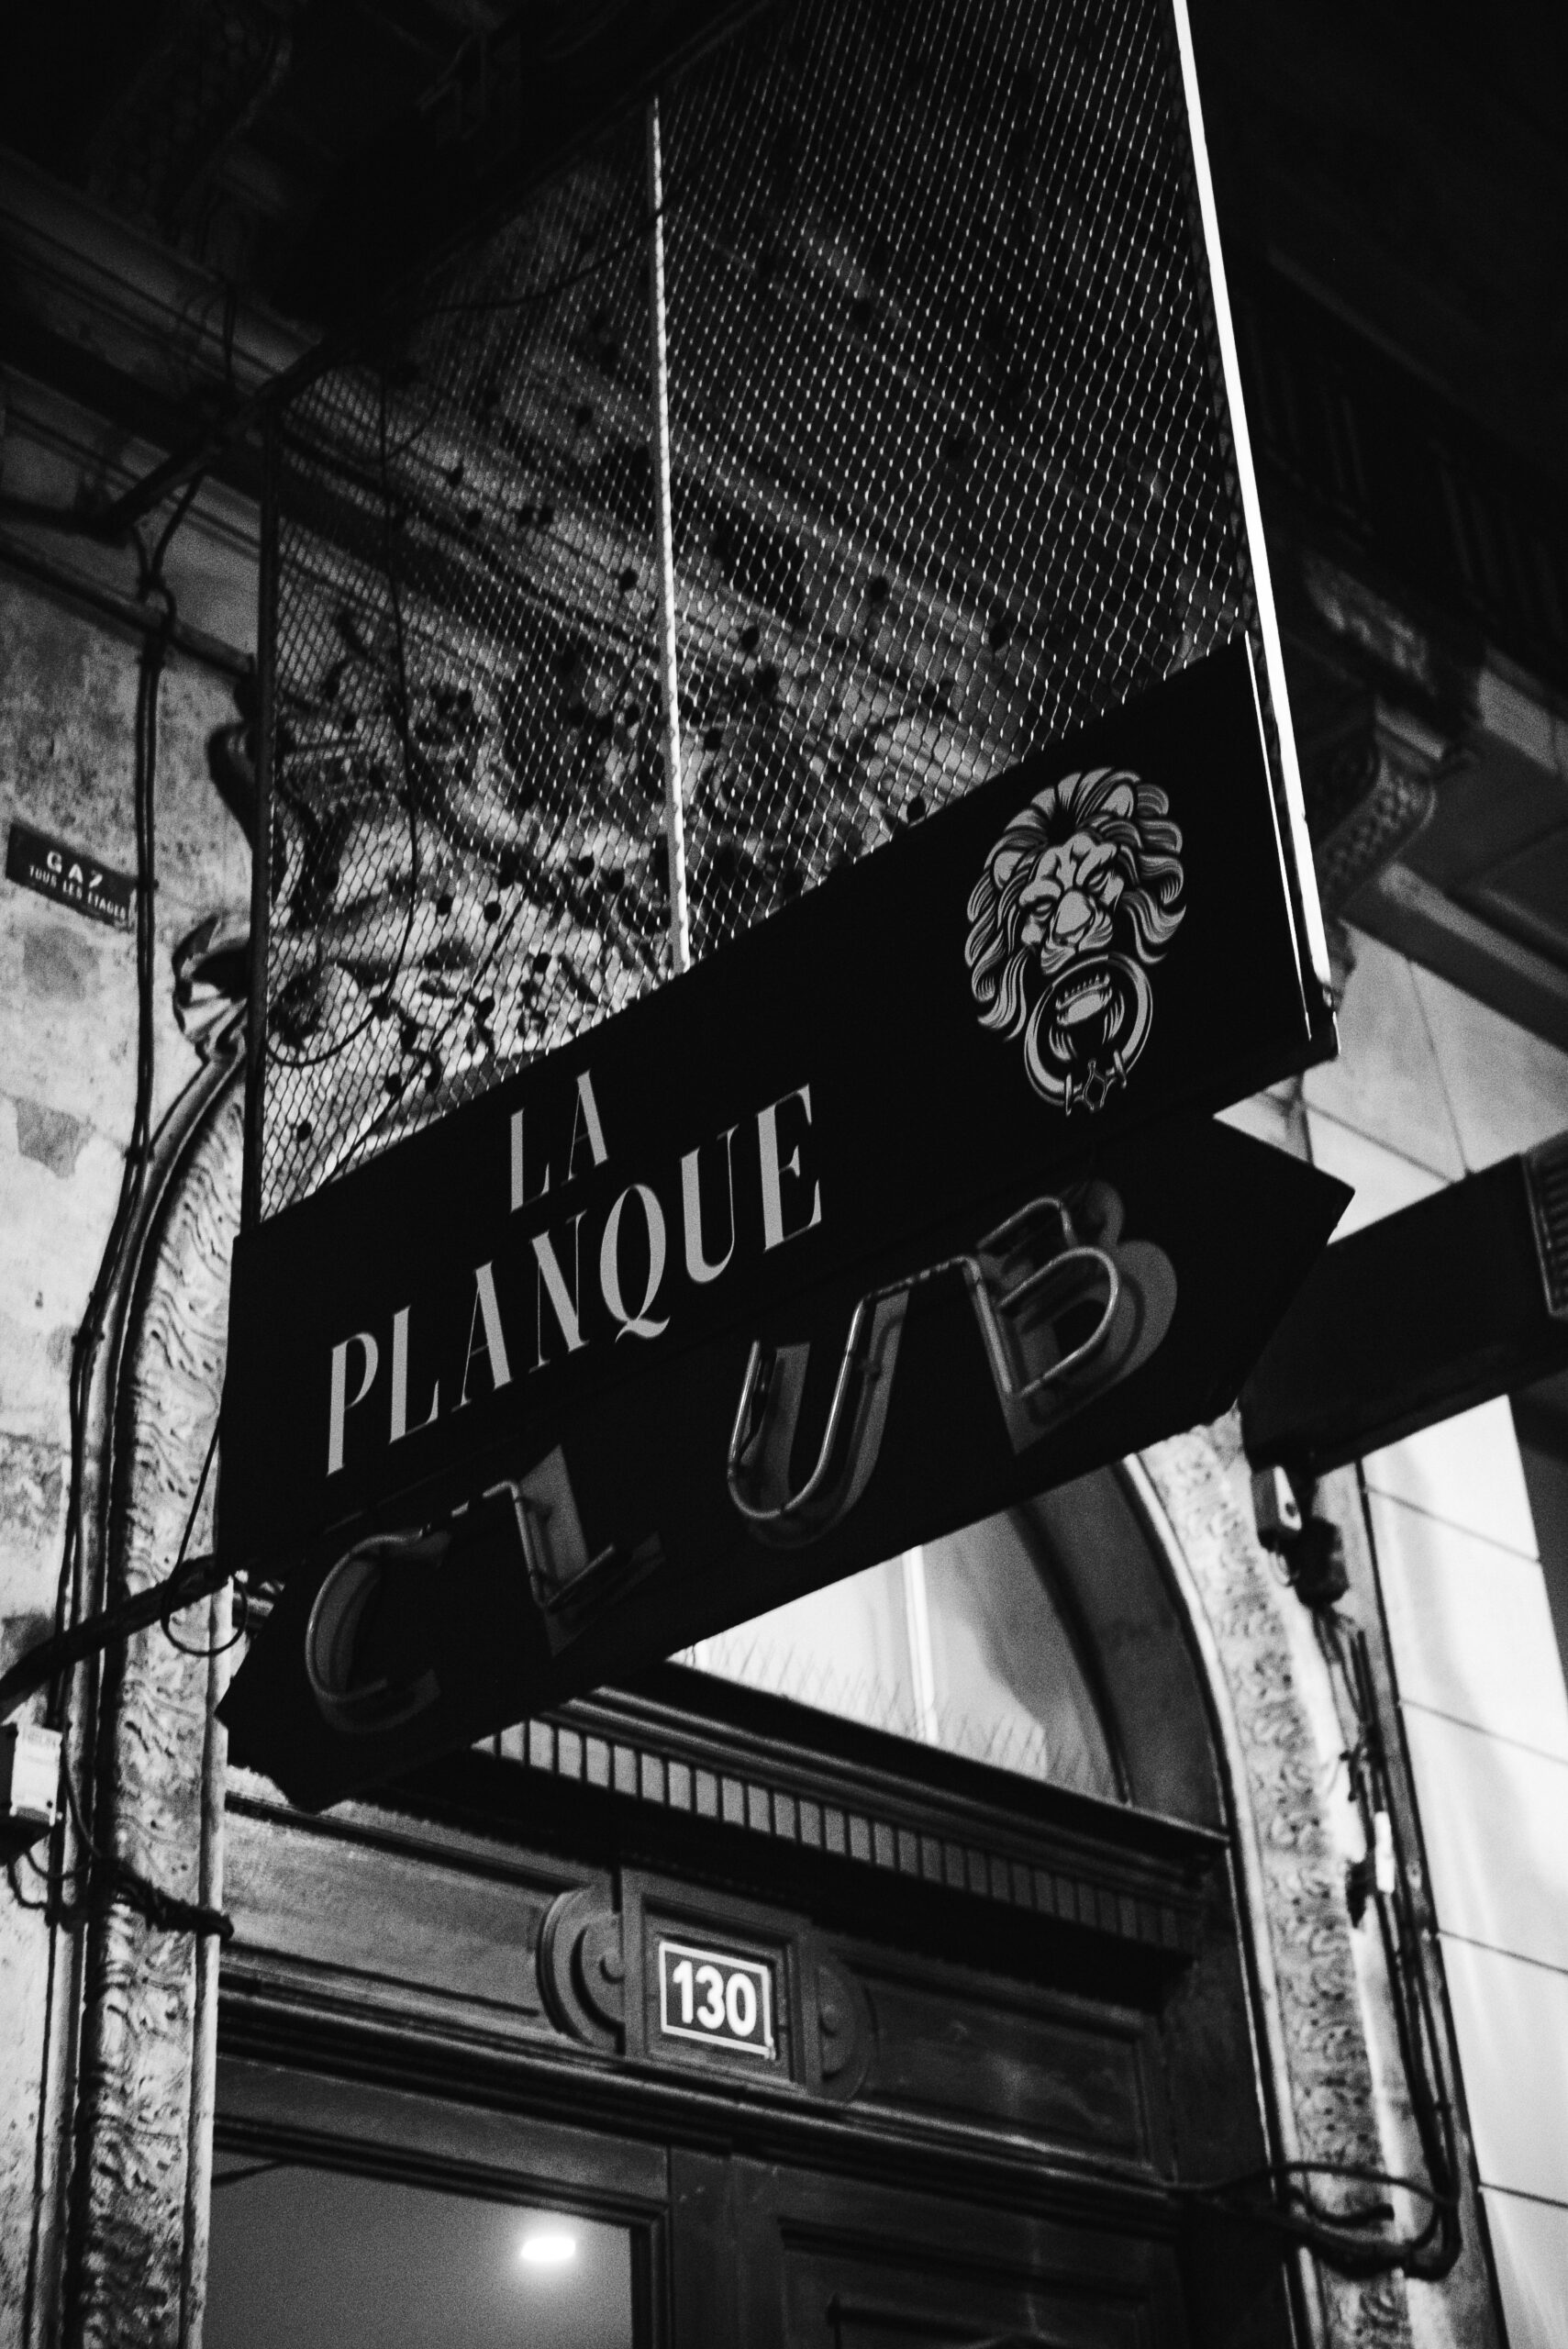 La Planque Paris - 130 rue de Rivoli